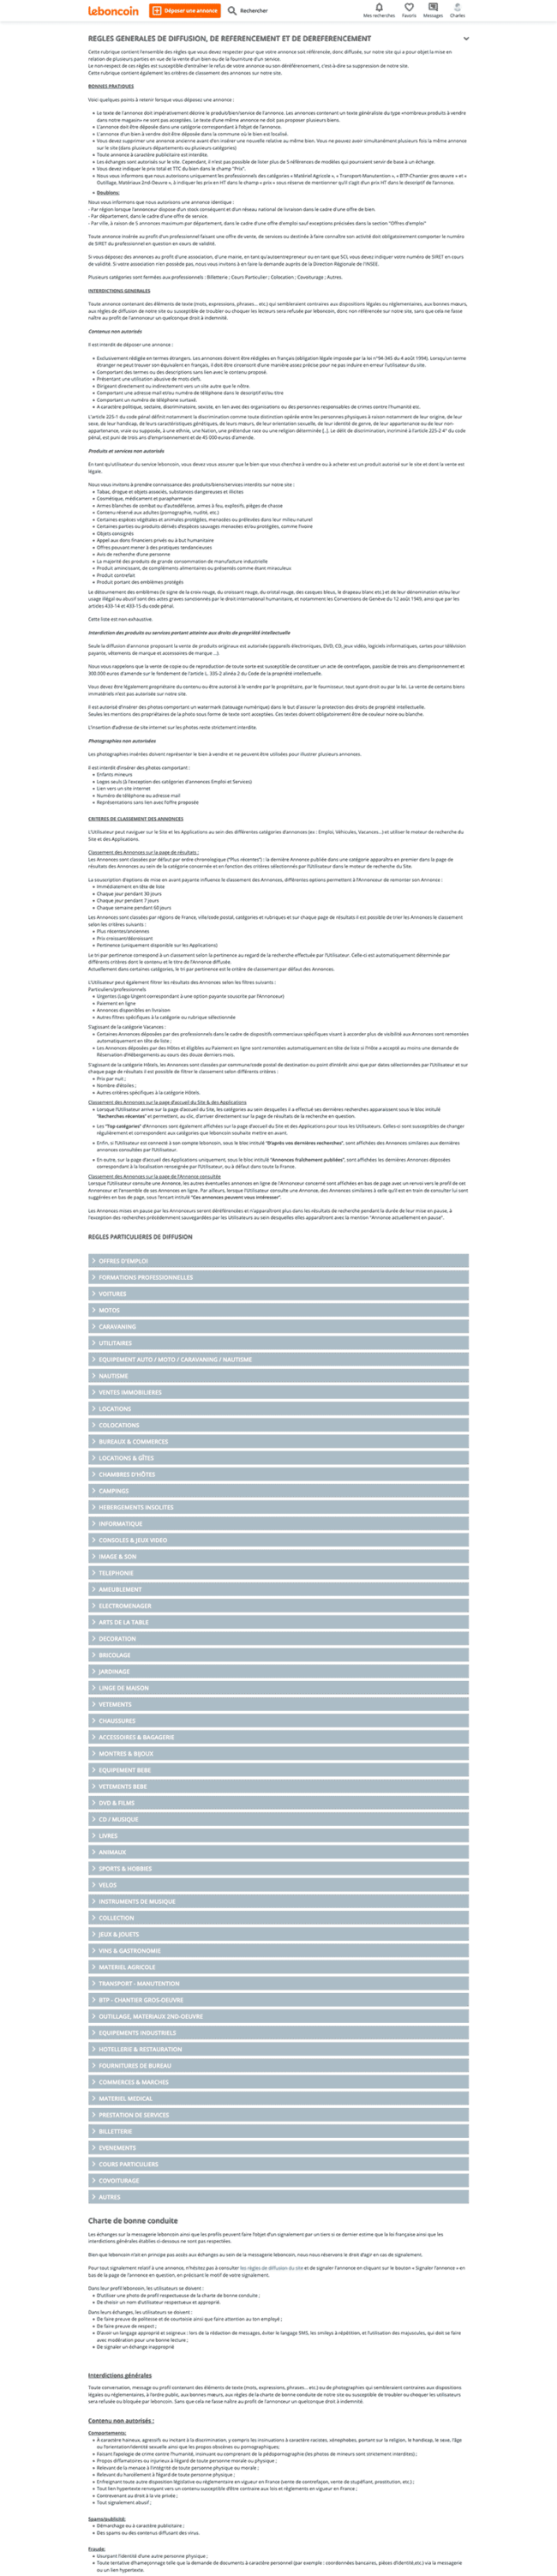 Copie d'écran réduite de la page des règles de publication du site de Leboncoin